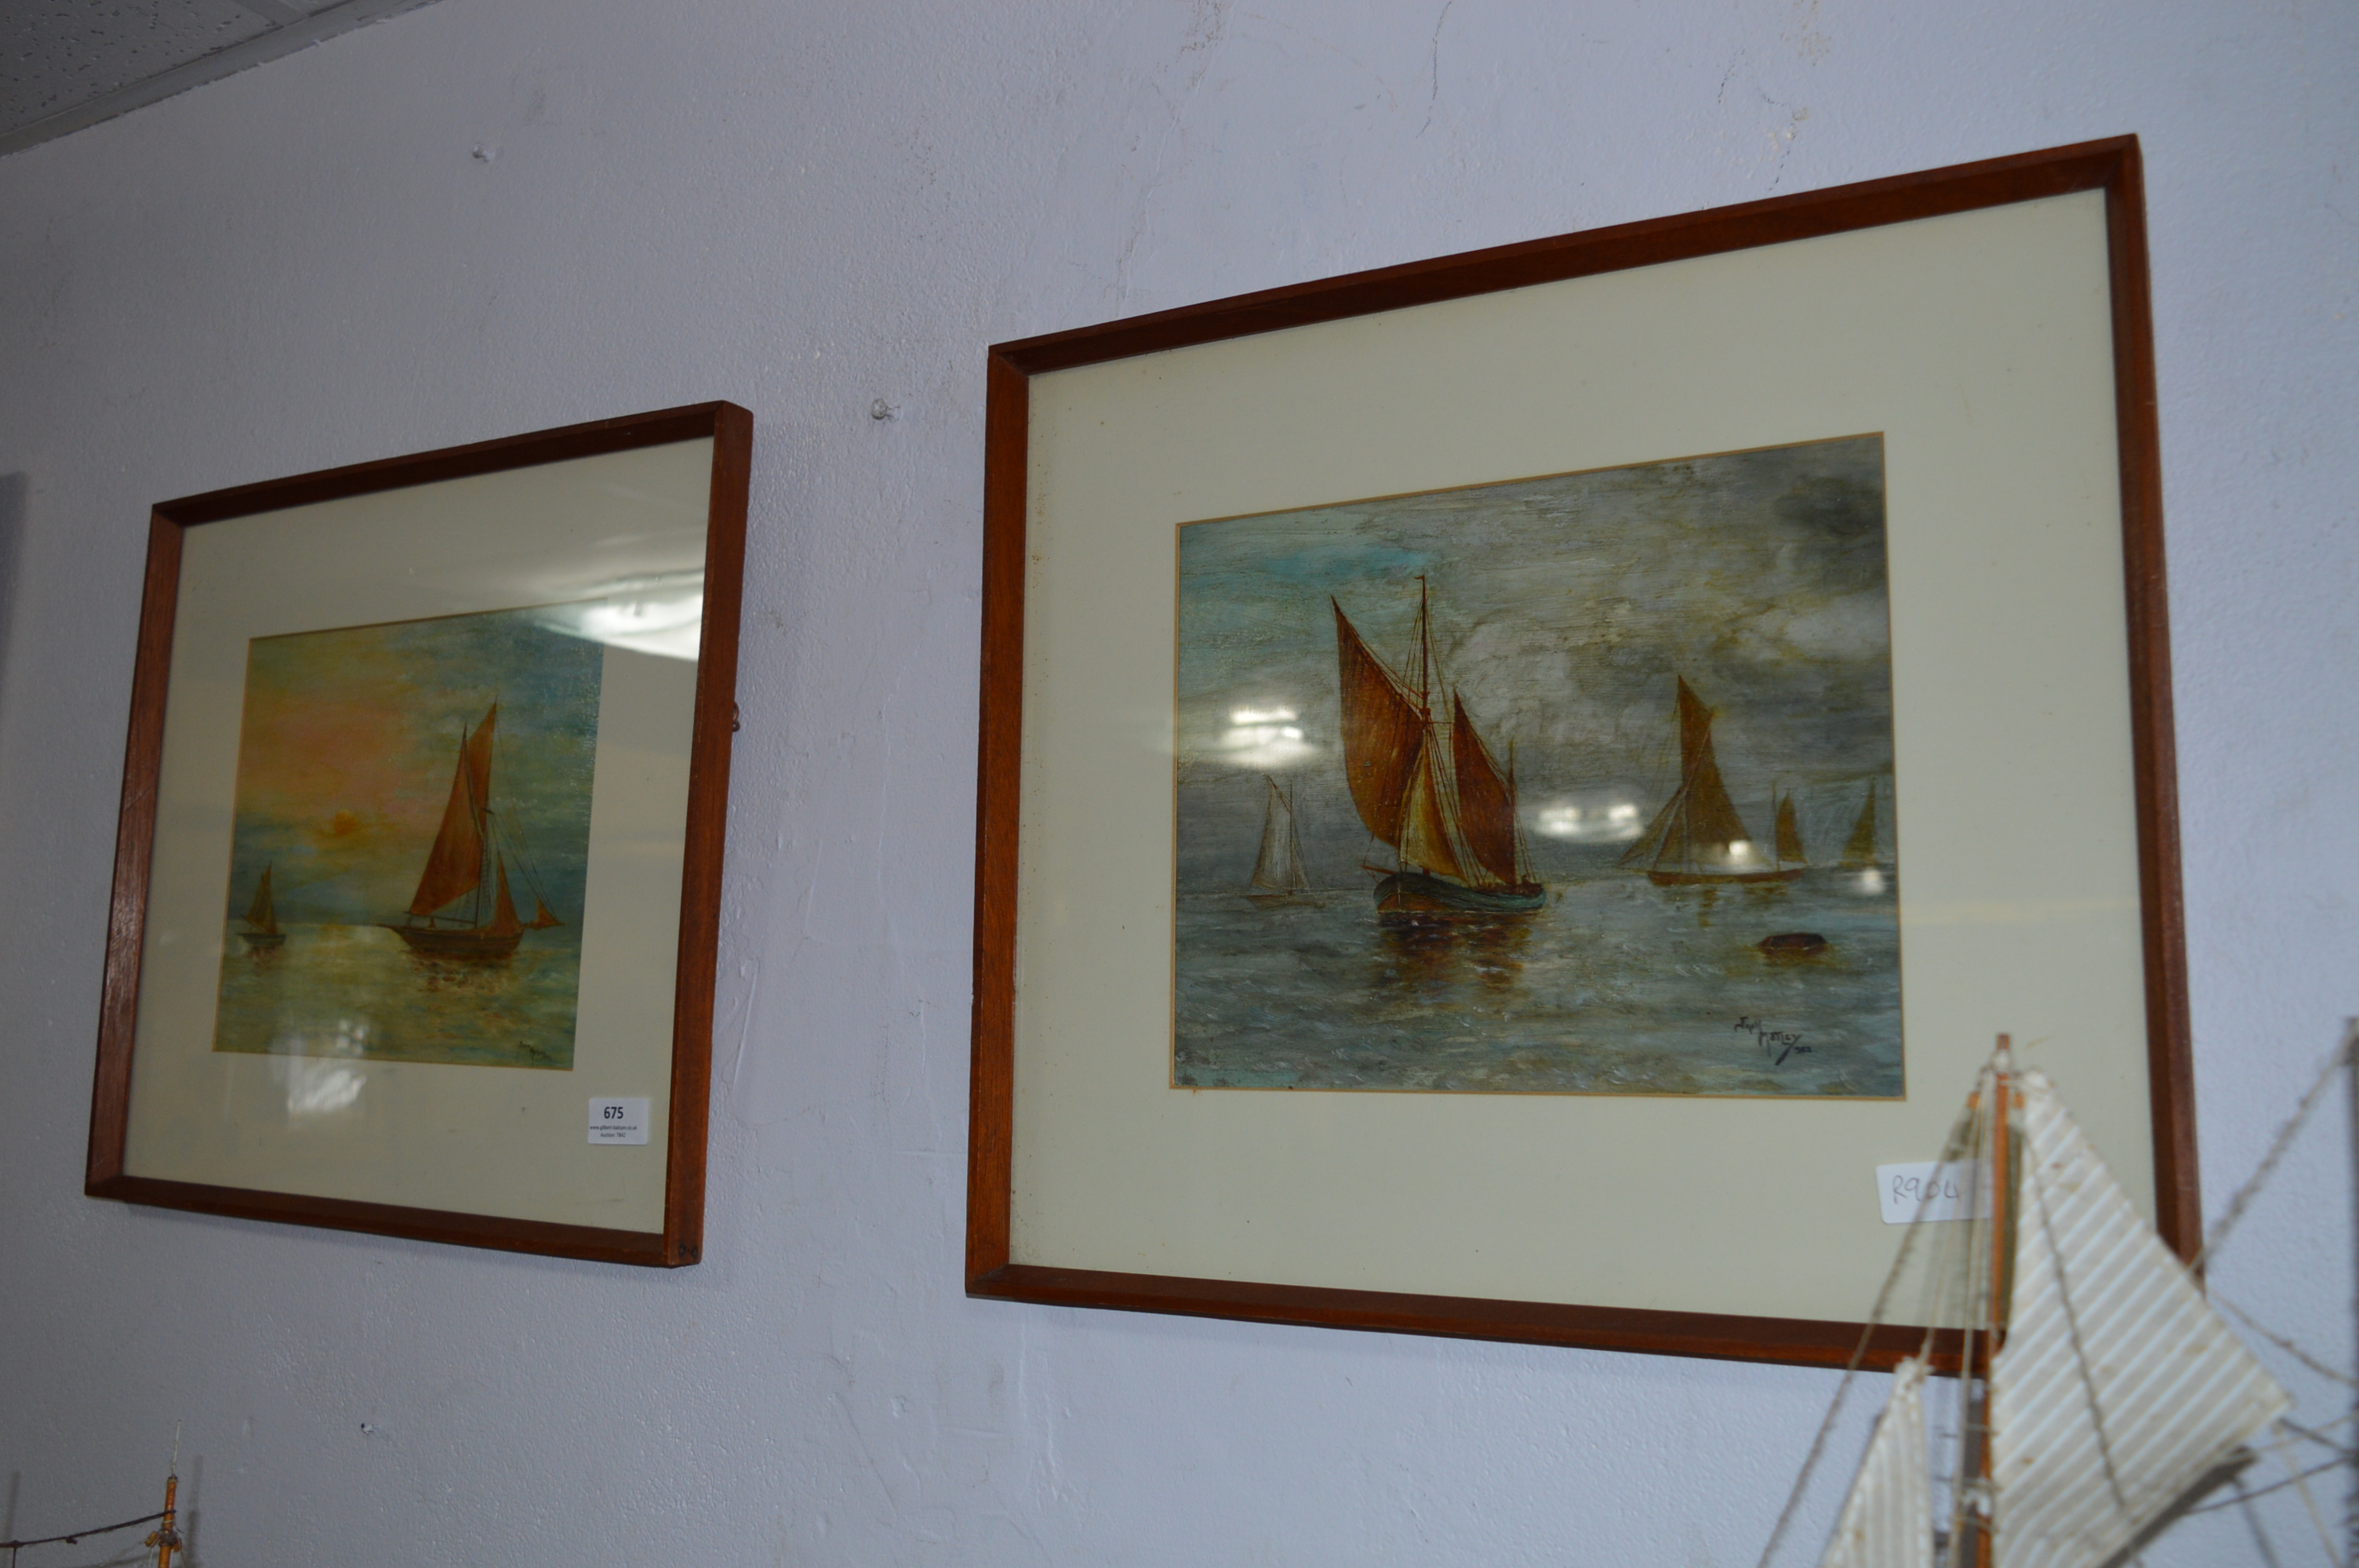 Pair of Framed Oil Paintings "Coastal Scenes" Jack Motley 1923